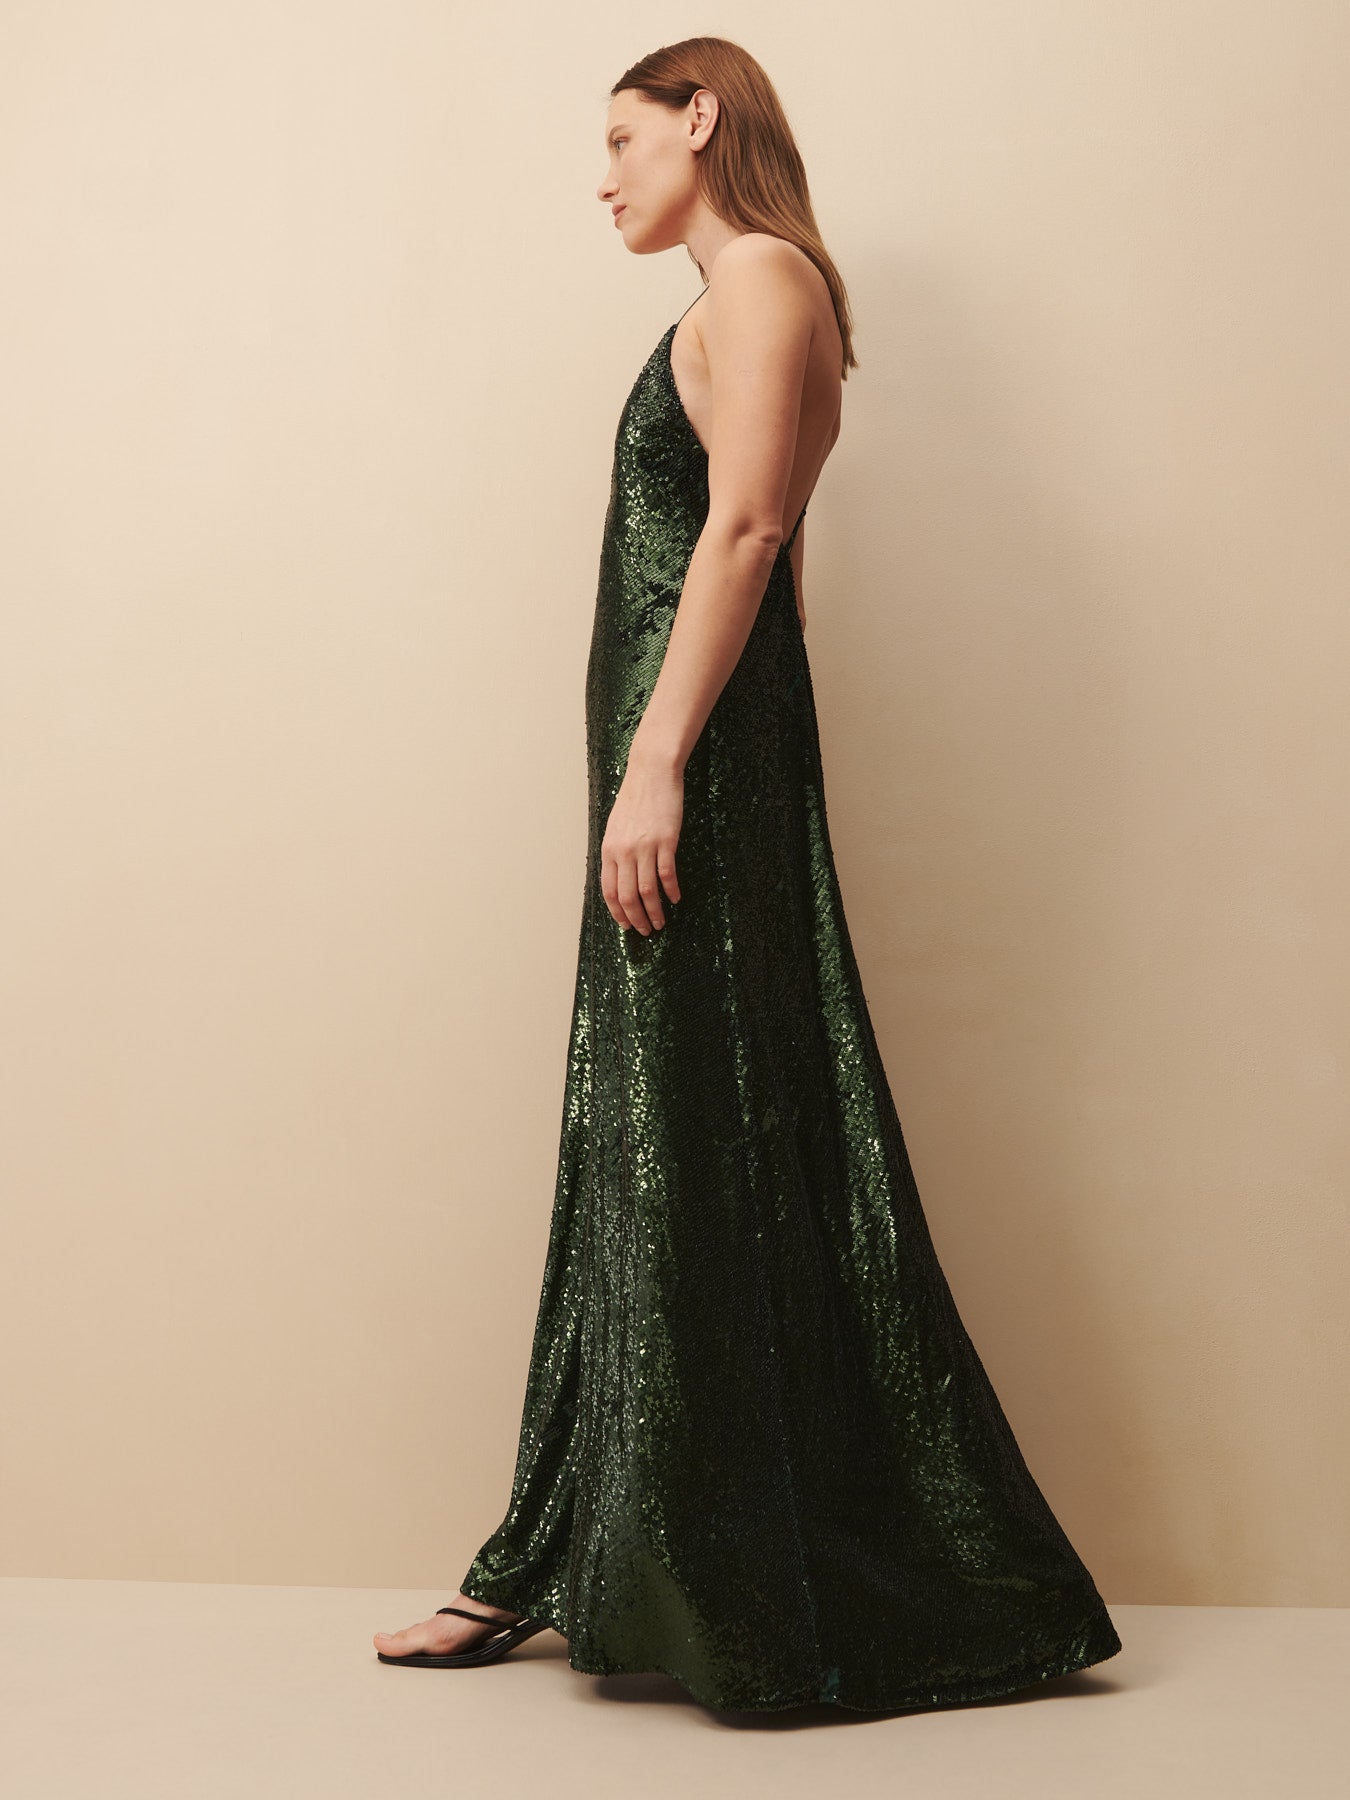 TWP Emerald Josephine Dress in sequin view 3